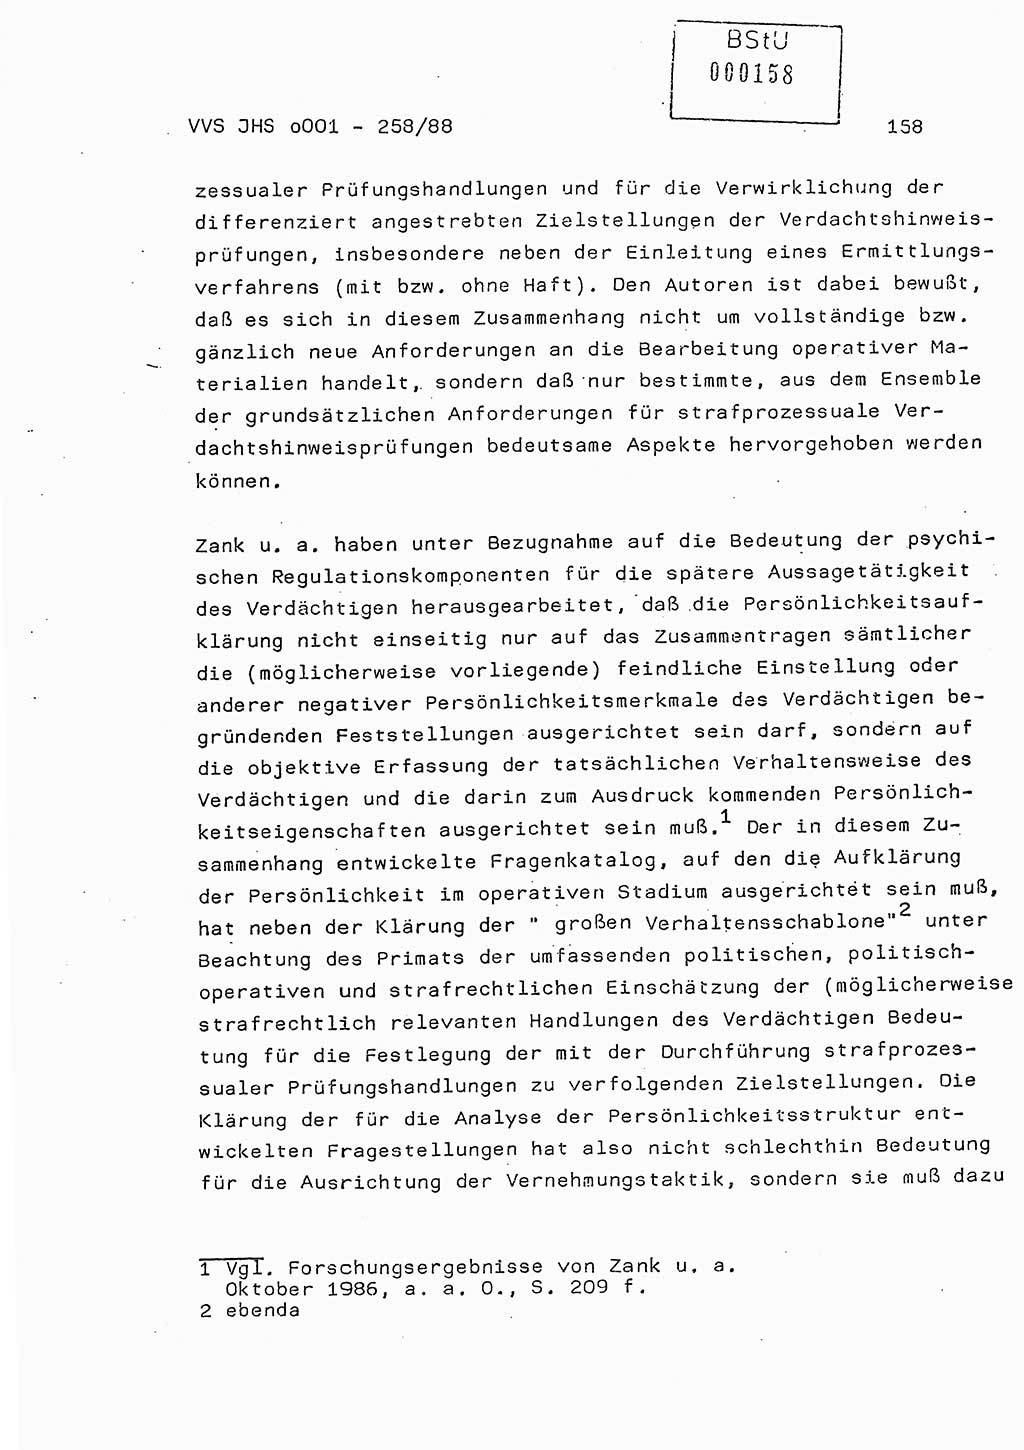 Dissertation, Oberleutnant Uwe Kärsten (JHS), Hauptmann Dr. Joachim Henkel (JHS), Oberstleutnant Werner Mählitz (Leiter der Abt. Ⅸ BV Rostock), Oberstleutnant Jürgen Tröge (HA Ⅸ/AKG), Oberstleutnant Winfried Ziegler (HA Ⅸ/9), Major Wolf-Rüdiger Wurzler (JHS), Ministerium für Staatssicherheit (MfS) [Deutsche Demokratische Republik (DDR)], Juristische Hochschule (JHS), Vertrauliche Verschlußsache (VVS) o001-258/88, Potsdam 1988, Seite 158 (Diss. MfS DDR JHS VVS o001-258/88 1988, S. 158)